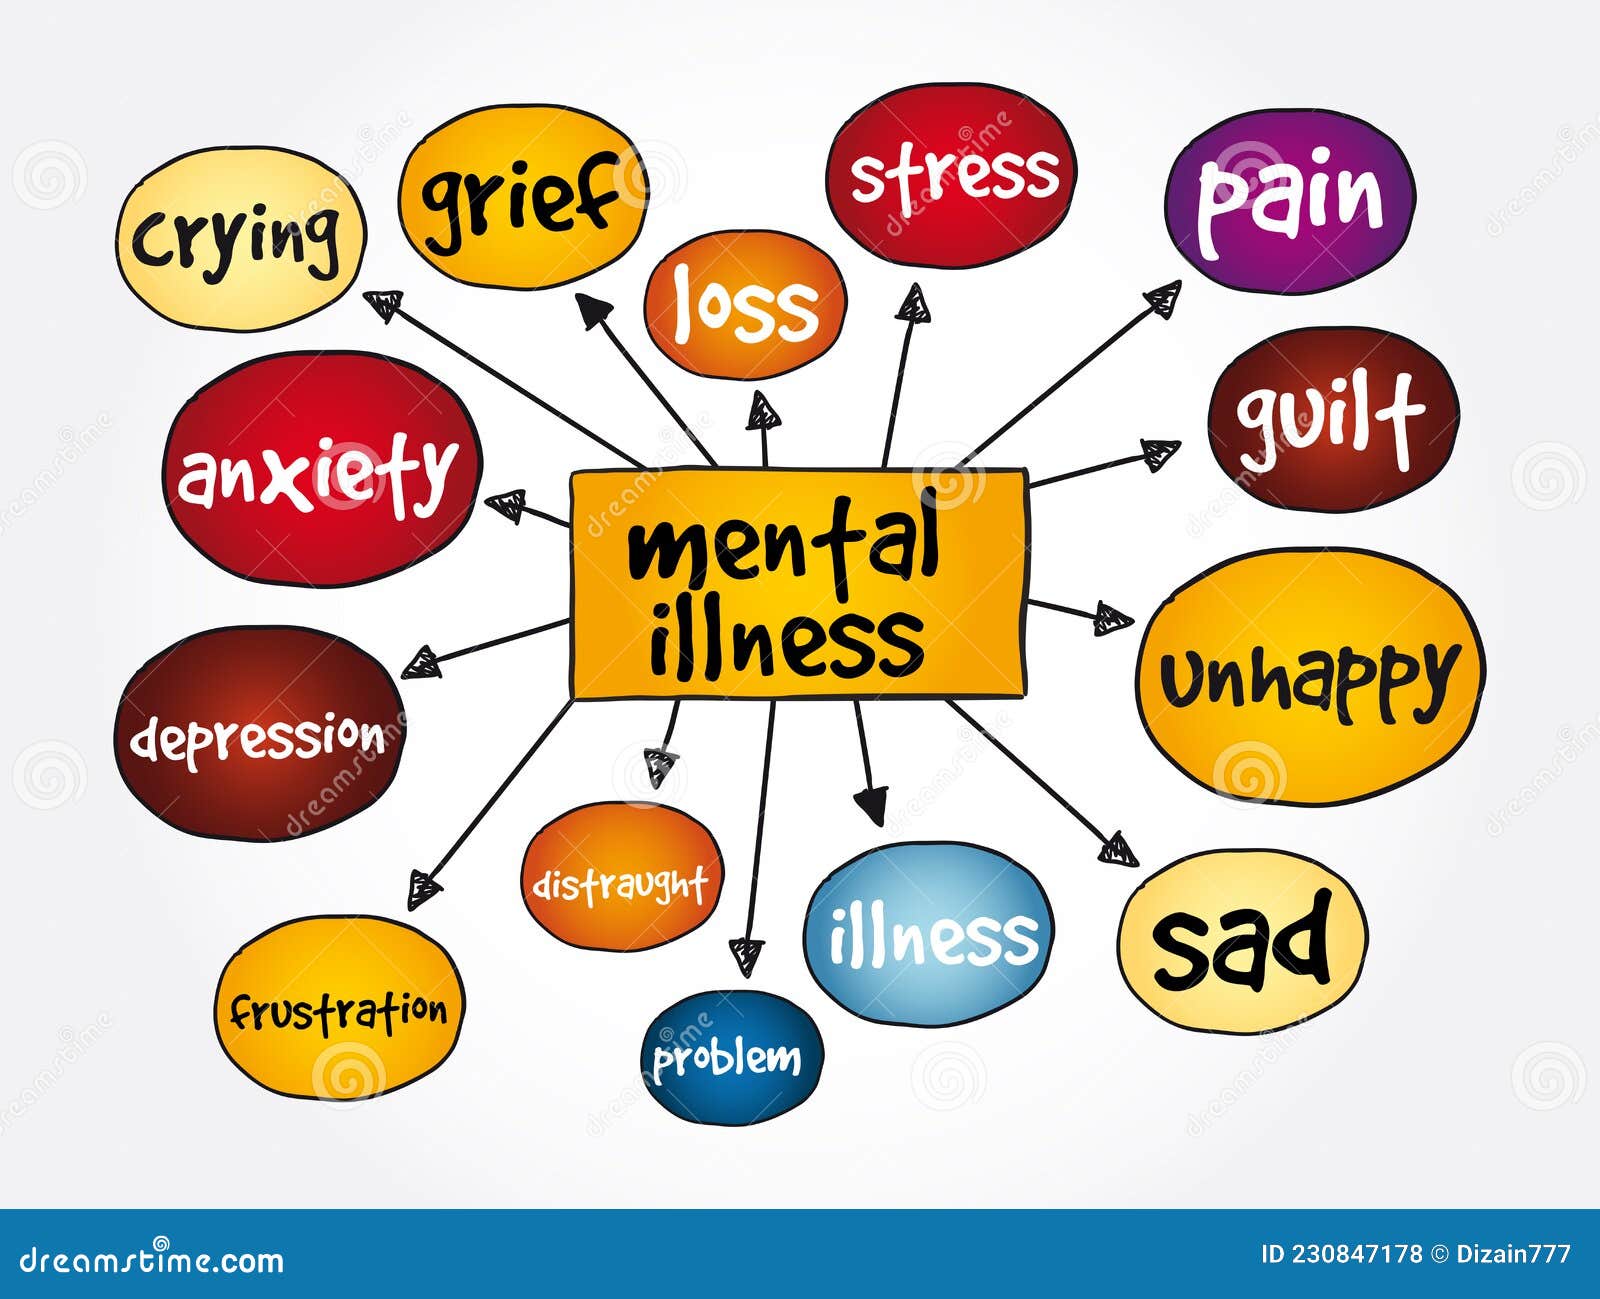 Mental Illness Mind Map Medical Concept Background Stock Illustration Illustration Of 7399